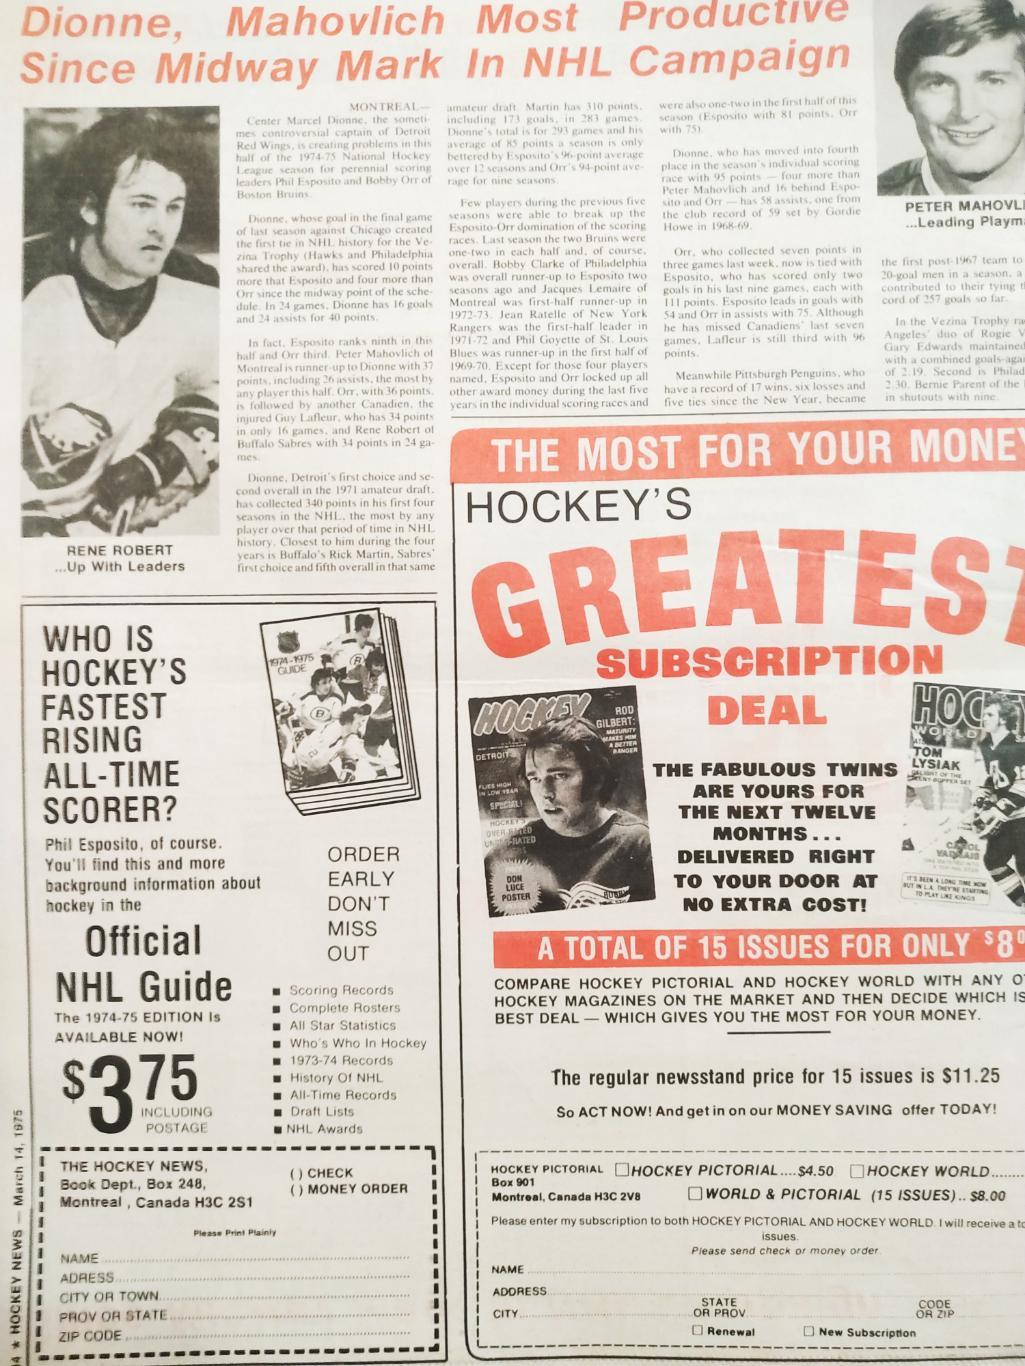 ХОККЕЙ ЖУРНАЛ ЕЖЕНЕДЕЛЬНИК НХЛ НОВОСТИ ХОККЕЯ MAR.14 1975 NHL THE HOCKEY NEWS 7